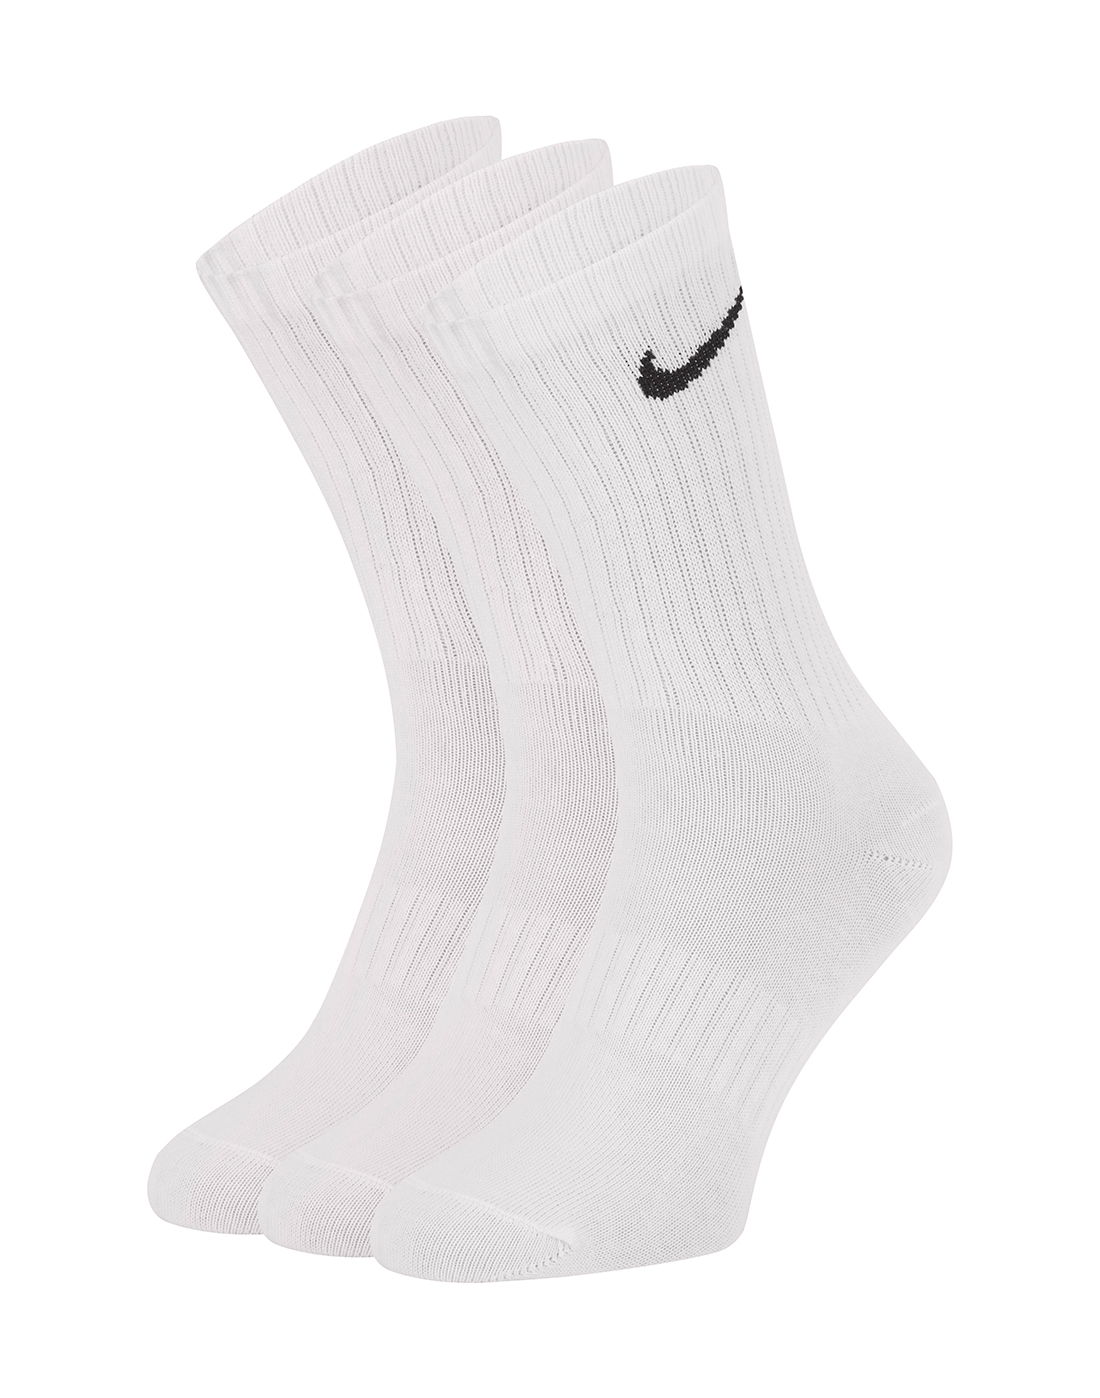 black and white nike socks